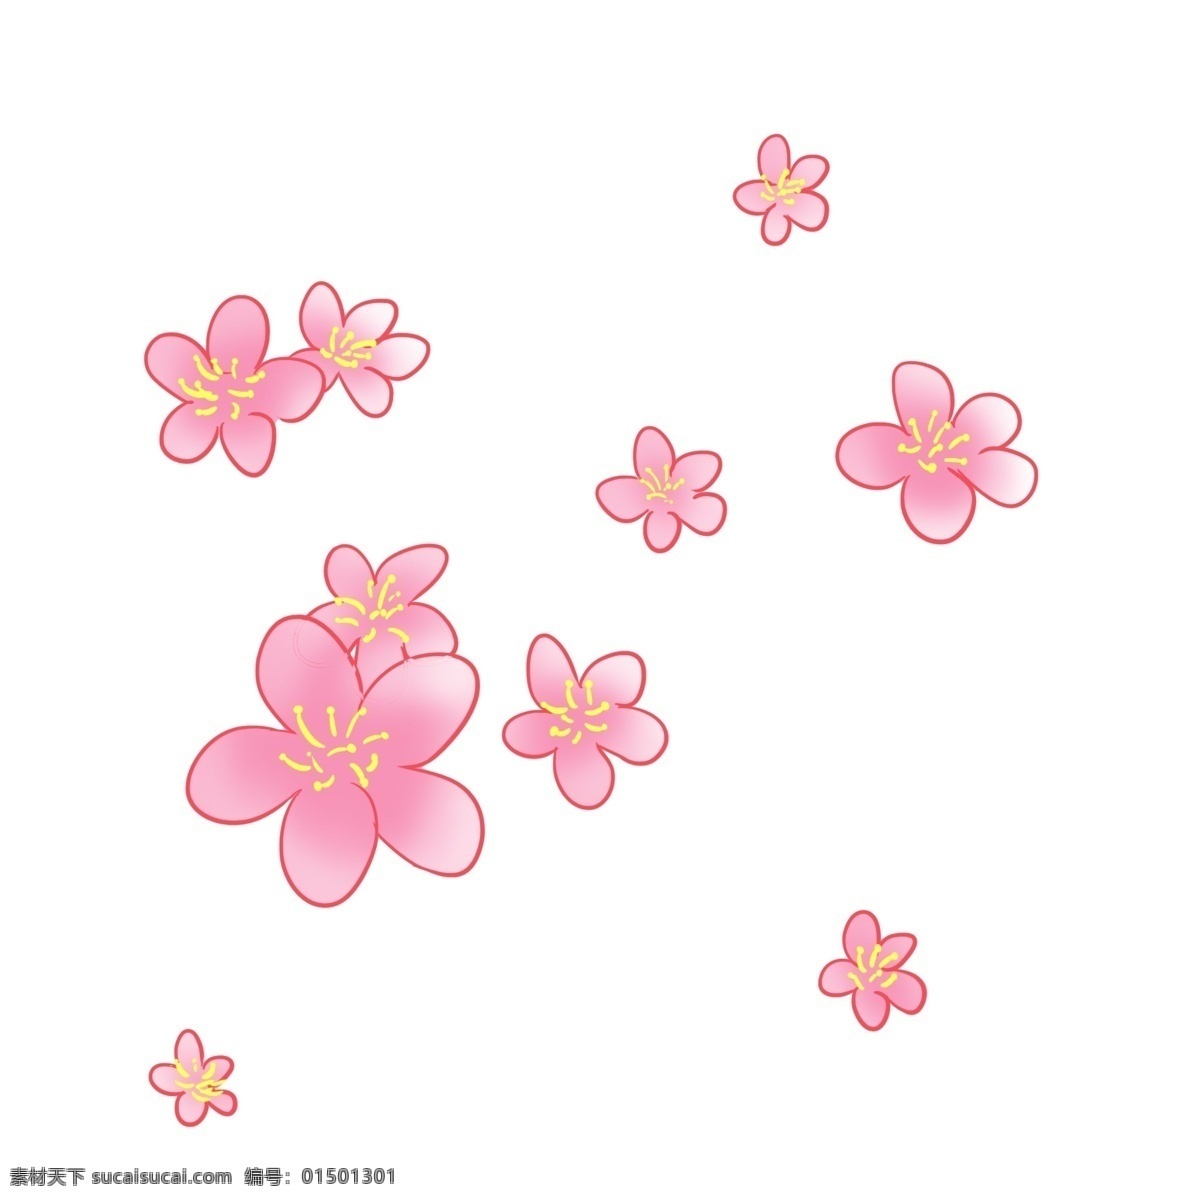 红色 手绘 植物 花朵 元素 创意 叶片 大自然 环境 纹理 绽放 卡通插画 可爱 香气 春季 季节 变化 花瓣